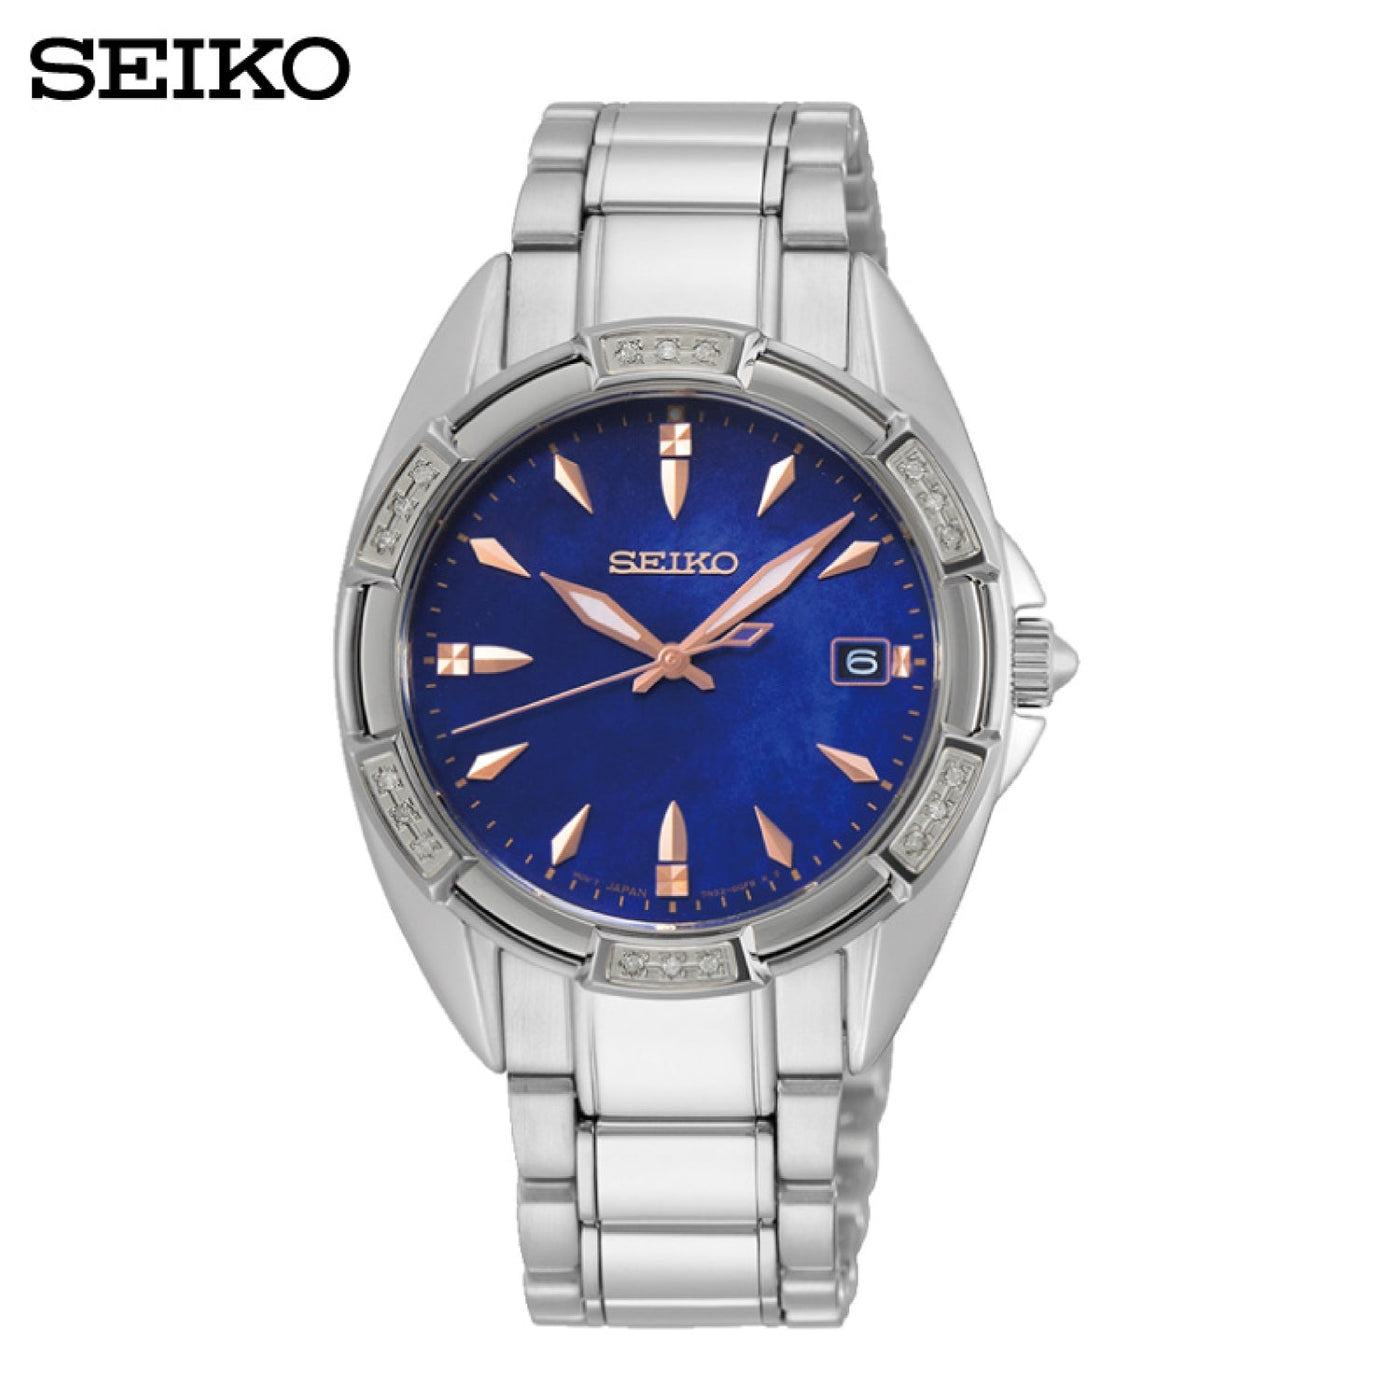 Seiko (ไซโก) นาฬิกาผู้หญิง รุ่น Conceptual SKK881P ระบบควอตซ์ ขนาดตัวเรือน 33 มม.